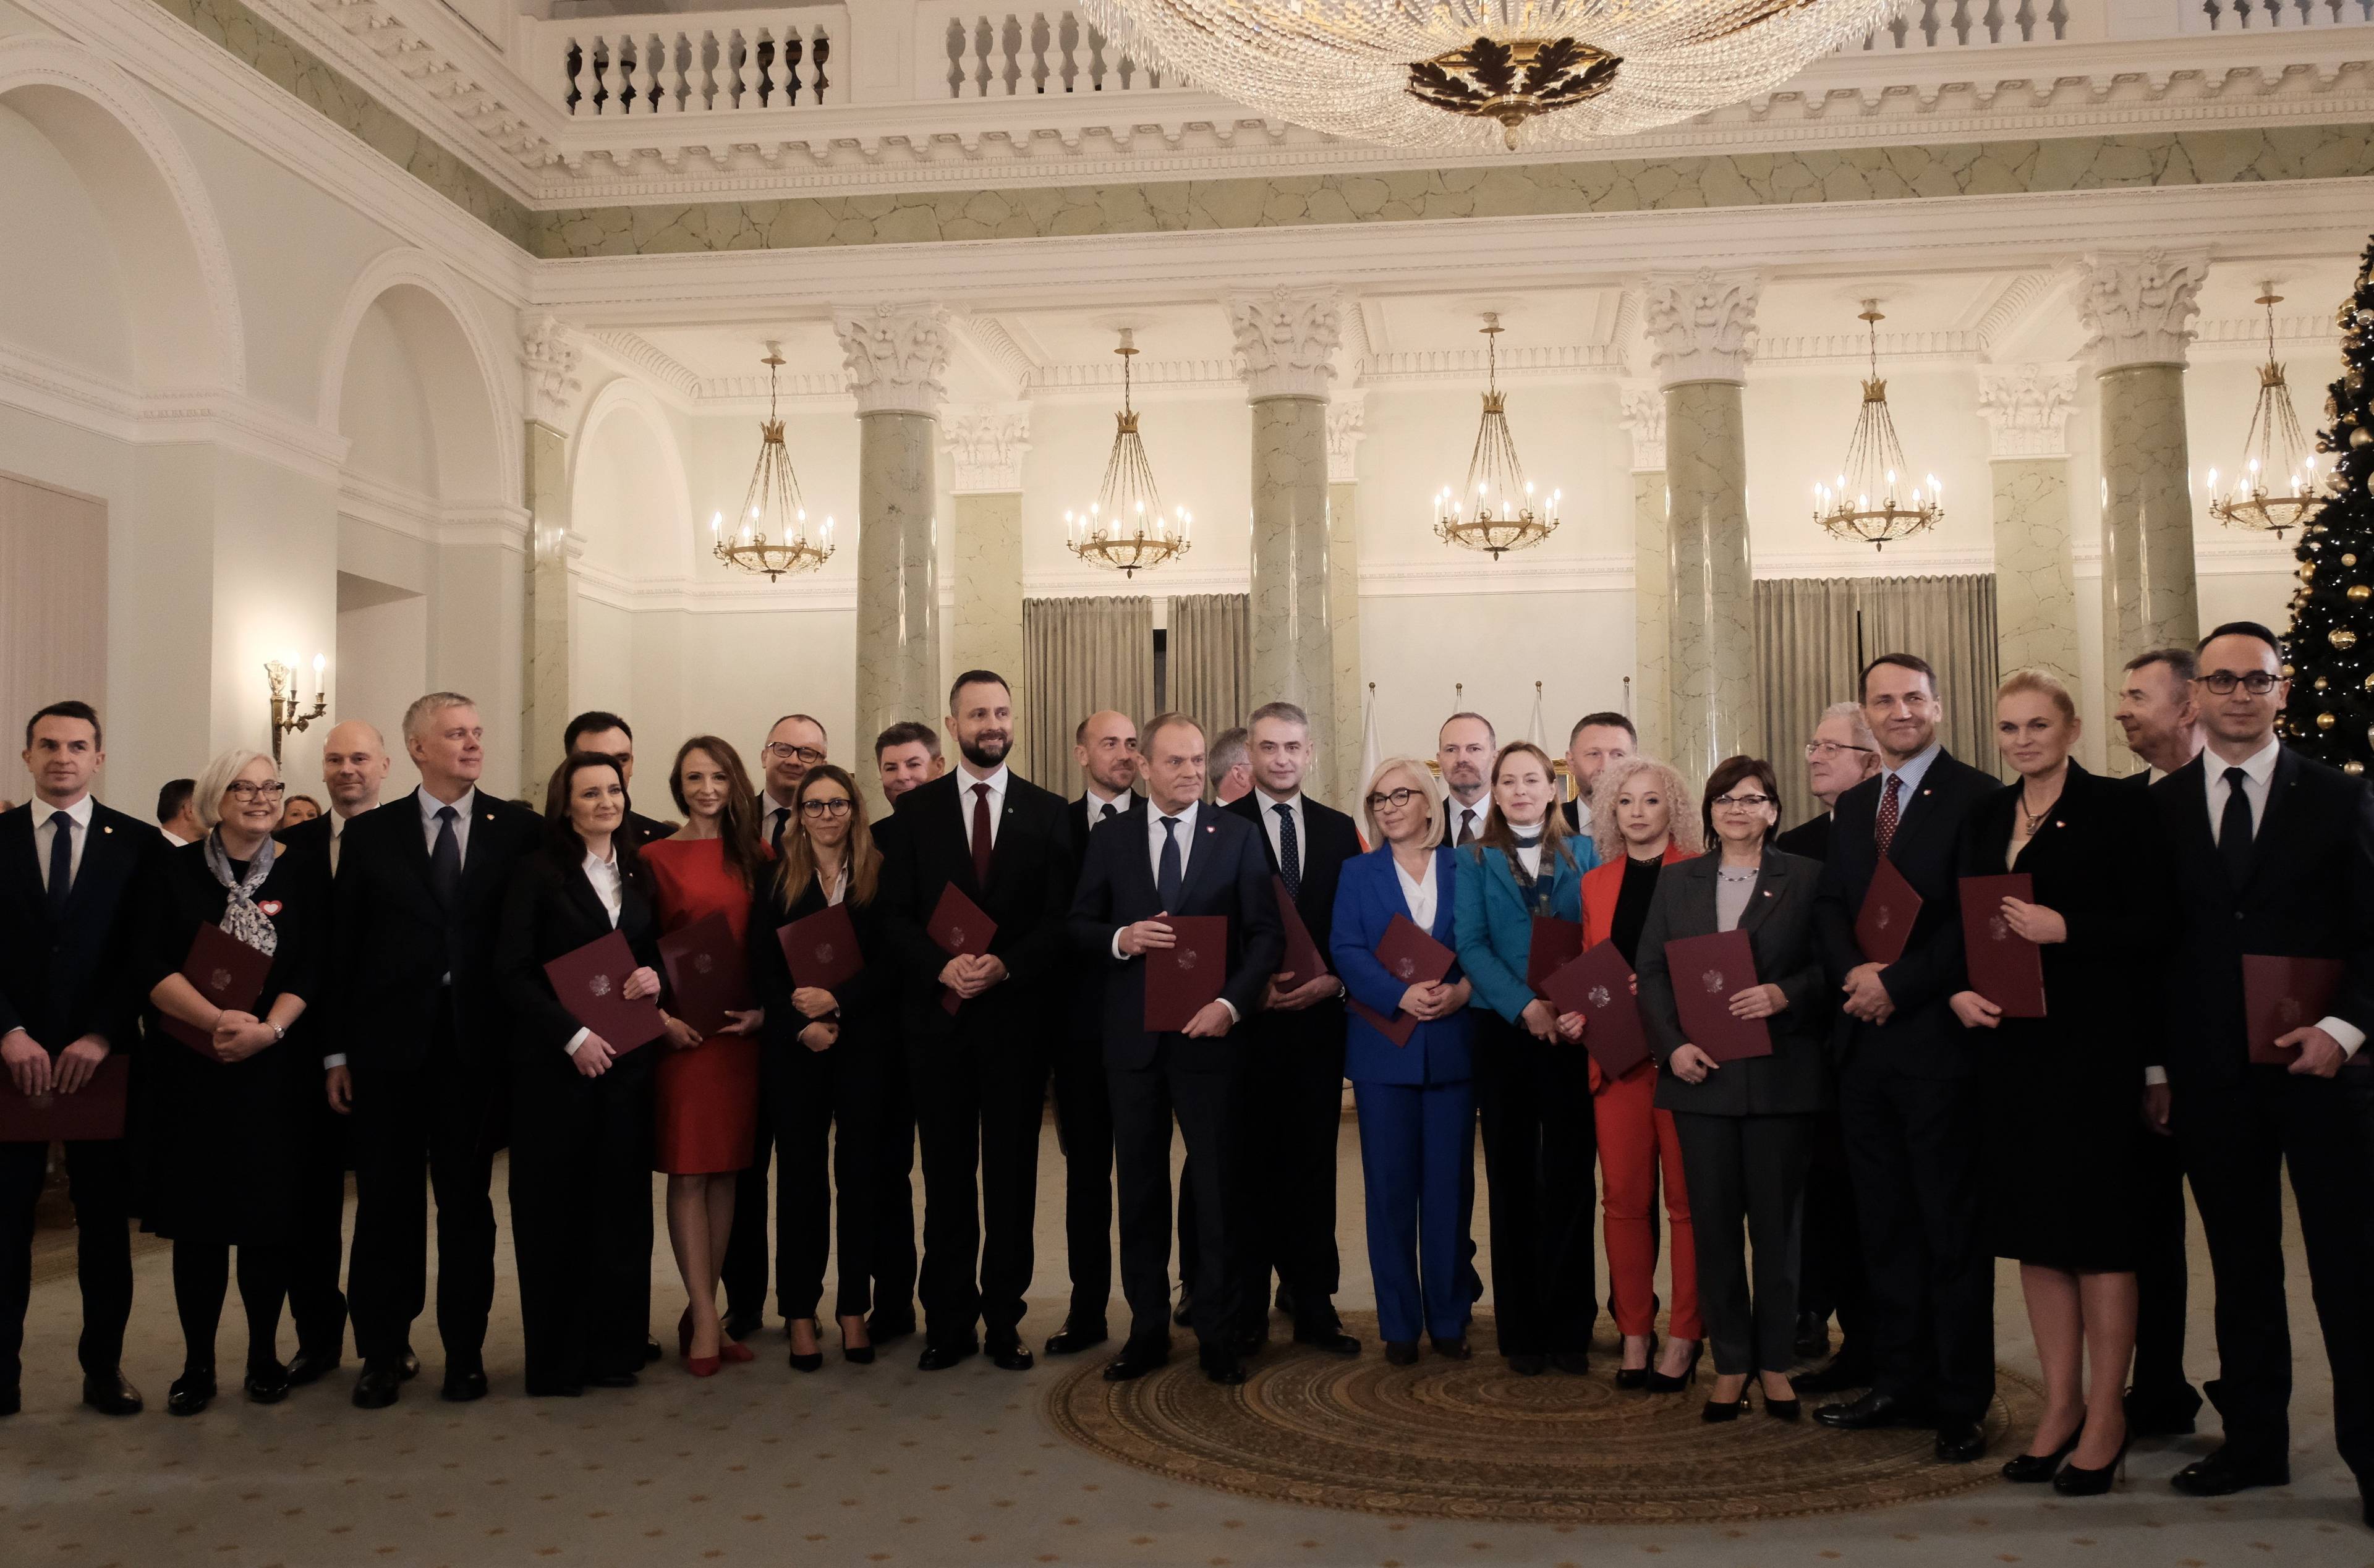 Rząd Tuska: grupowe zdjęcie kobiet i męzczyzn pod zyrandolem w pałacu prezydenckim